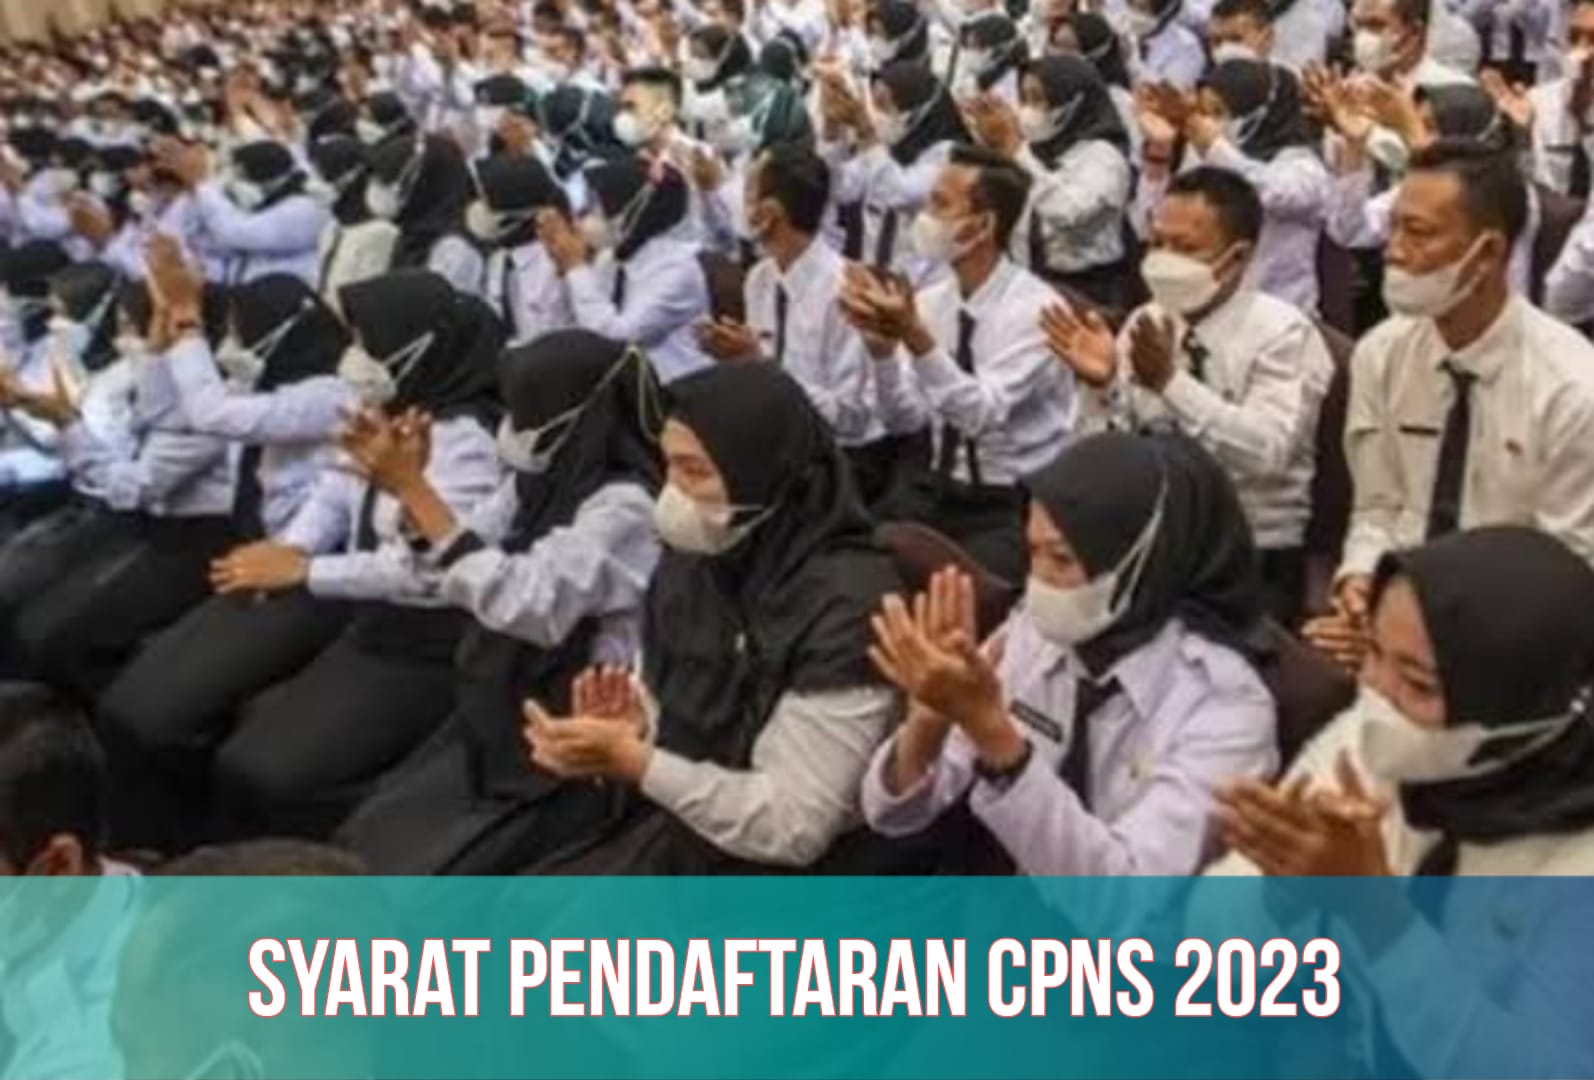 Syarat Pendaftaran CPNS 2023, Formasi Terbuka untuk Lulusan SMA dan S1, Cek Rinciannya